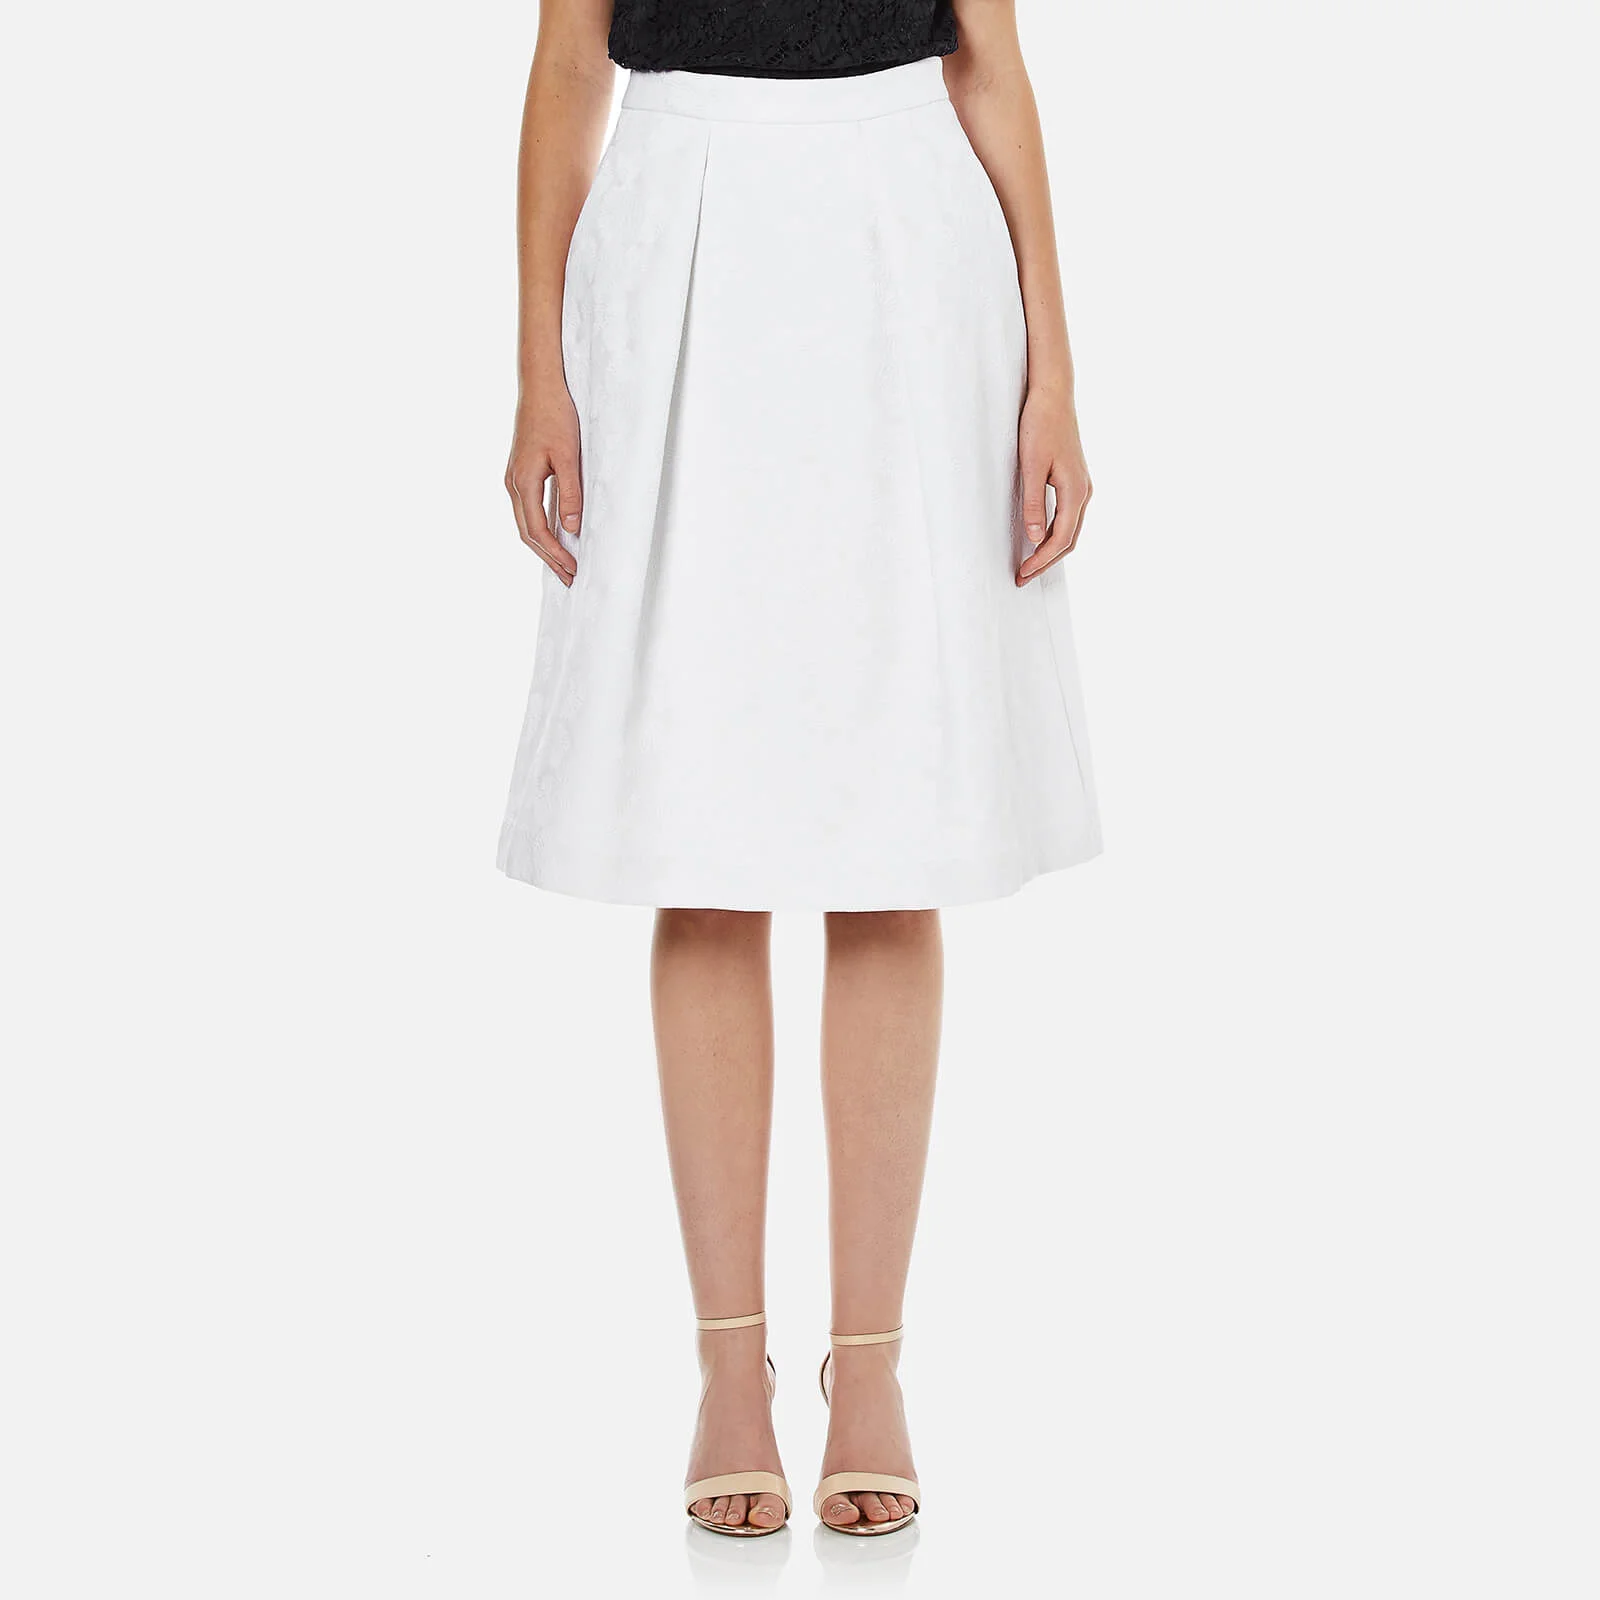 MICHAEL MICHAEL KORS Women's Pocket Pleat Skirt - White Image 1